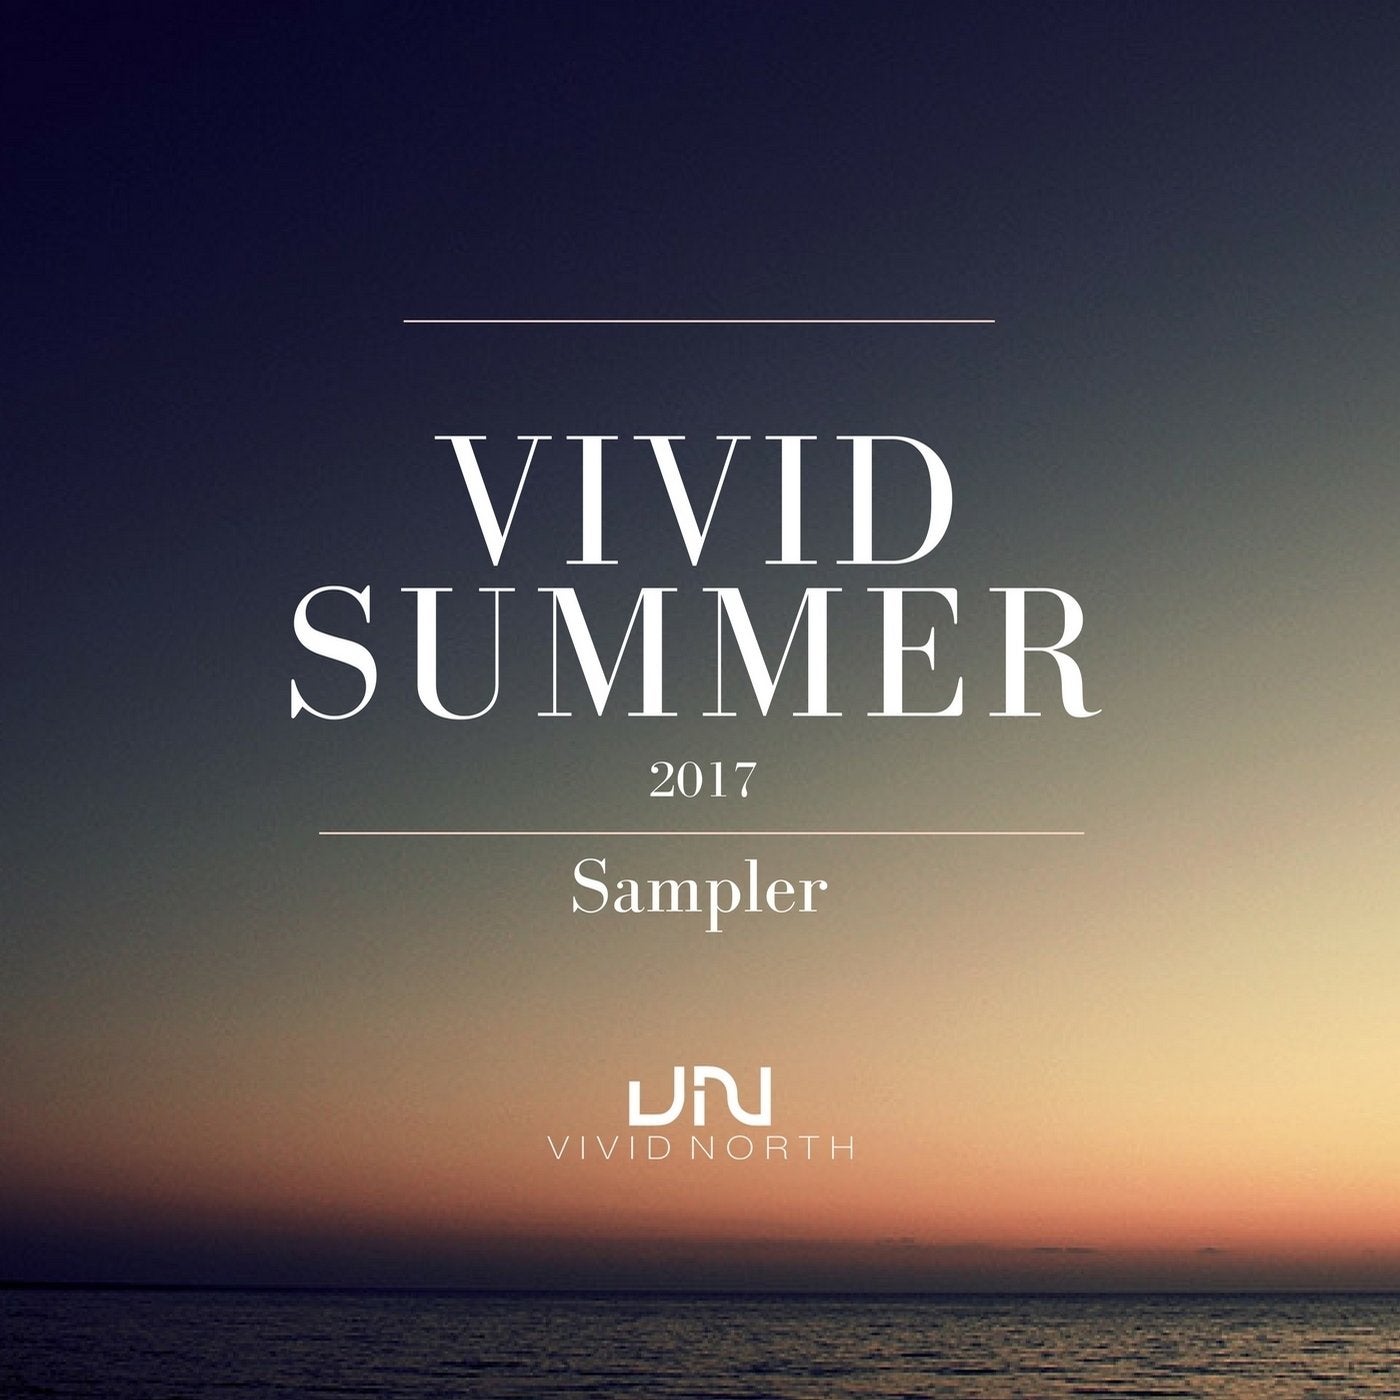 Vivid Summer 2017: Sampler